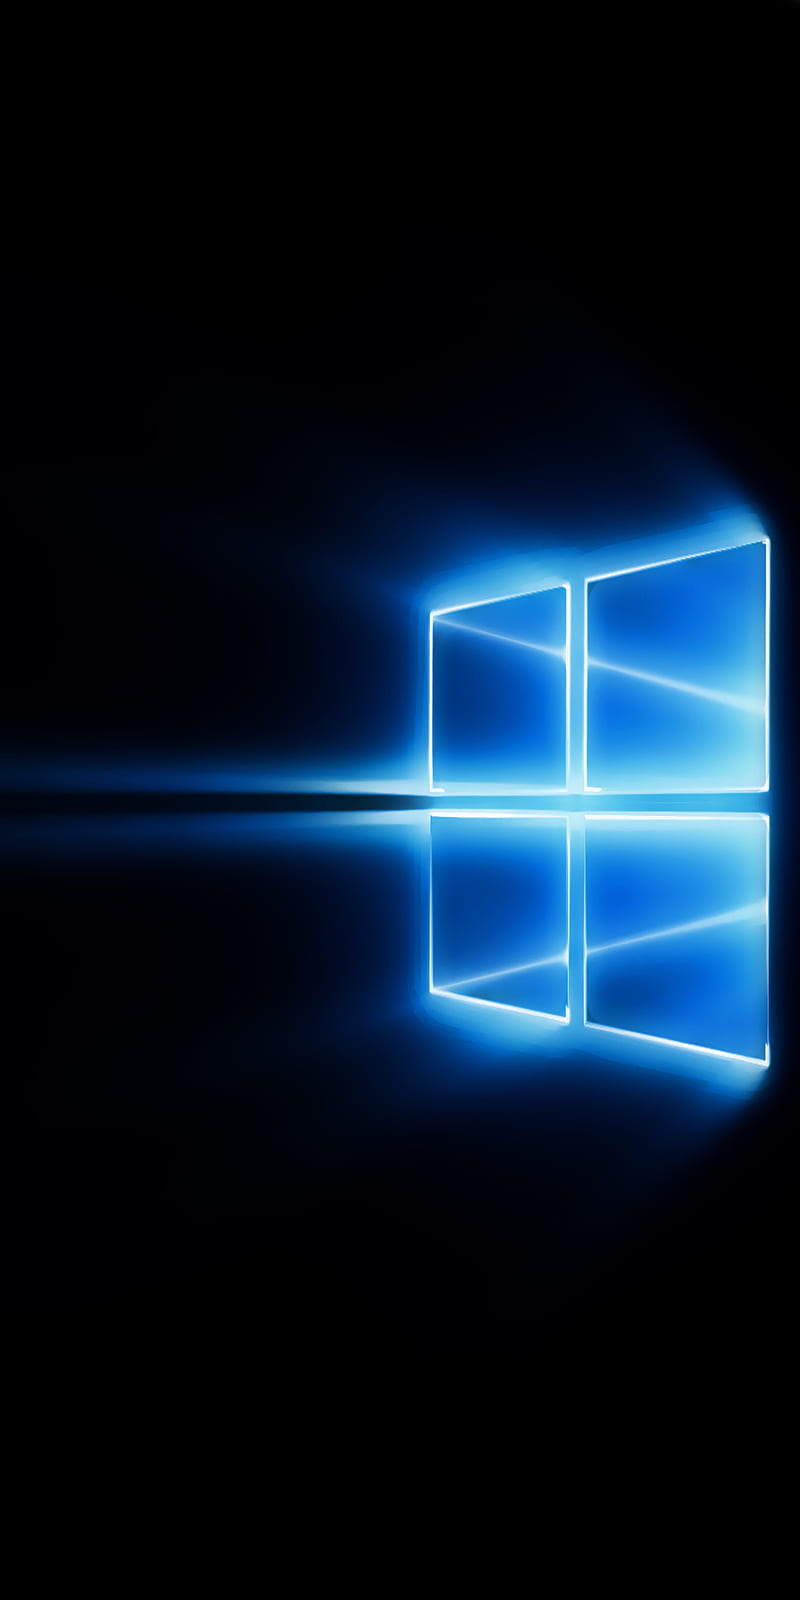 Windows 10 Pro hình nền sẽ mang đến cho bạn một trải nghiệm sử dụng máy tính thú vị hơn. Hình nền được thiết kế đầy tinh tế và độ phân giải cao, đảm bảo màn hình của bạn sẽ trở nên sắc nét hơn bao giờ hết. Những hình nền này còn được đa dạng về màu sắc, chủ đề, giúp bạn thỏa sức lựa chọn cho mình những bức hình ưa thích nhất. Hãy tải ngay Windows 10 Pro hình nền để trở thành người sử dụng nổi bật nhất!